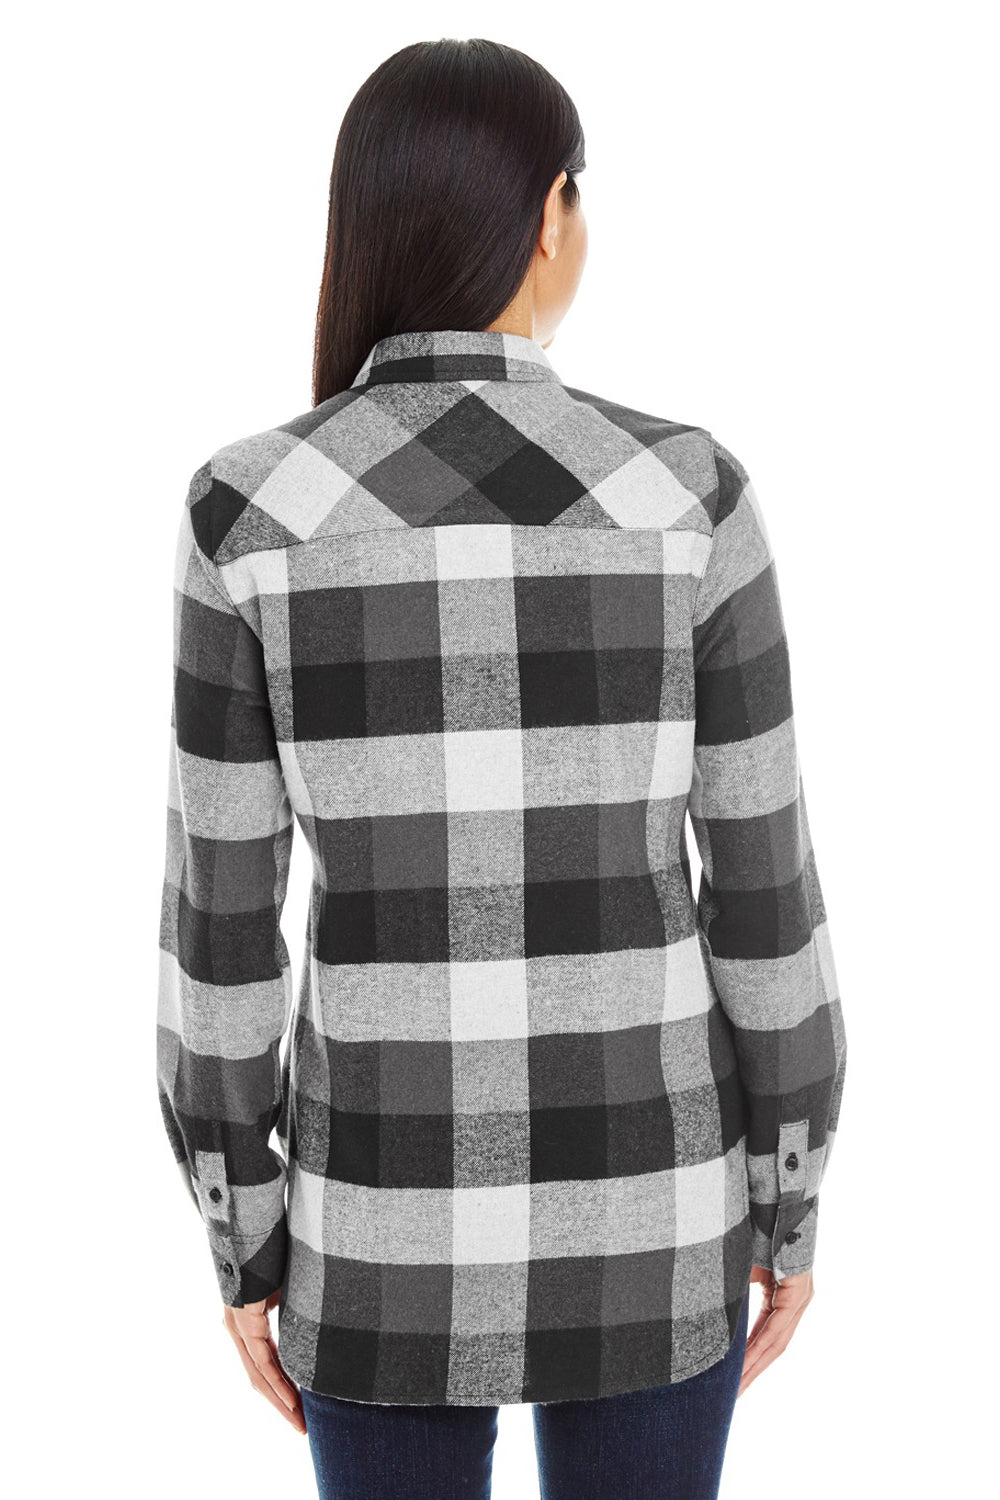 Burnside B5210/5210 Womens Boyfriend Flannel Long Sleeve Button Down Shirt w/ Double Pockets Black Model Back